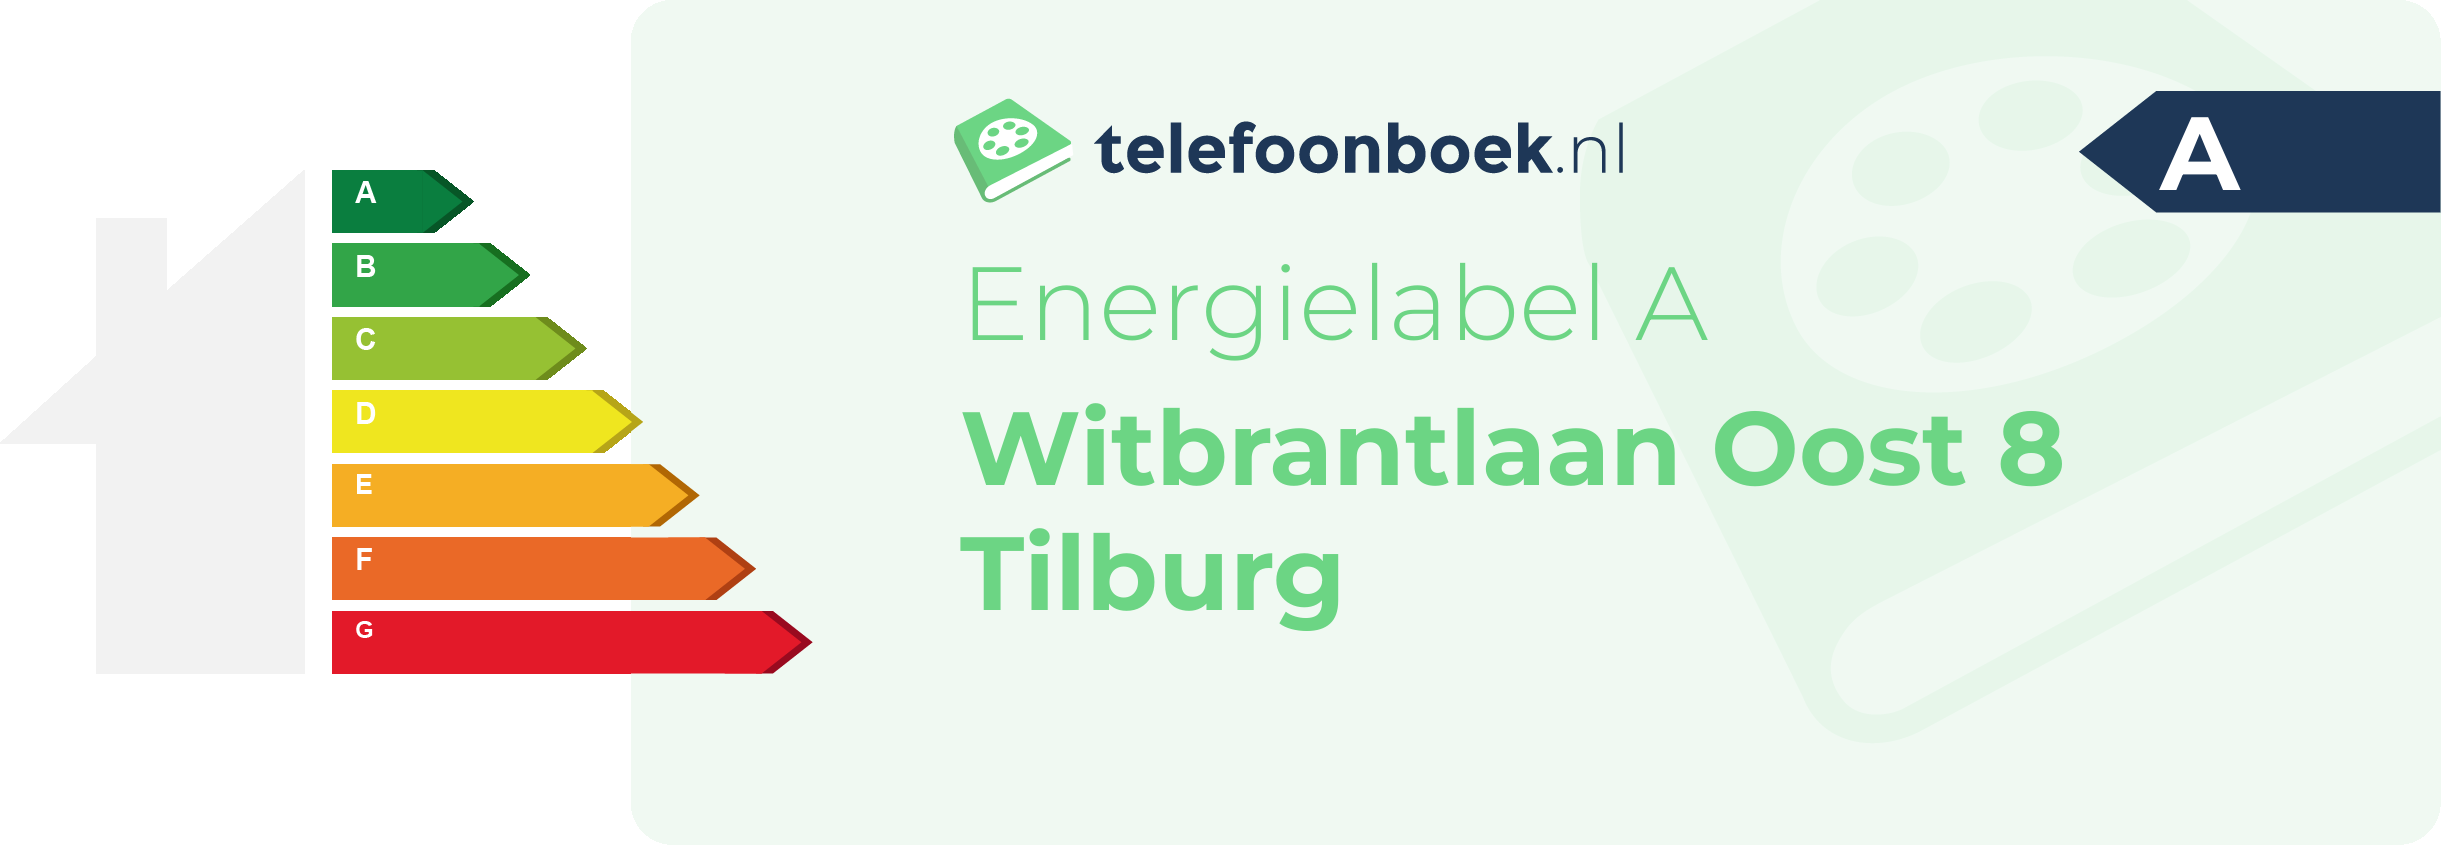 Energielabel Witbrantlaan Oost 8 Tilburg